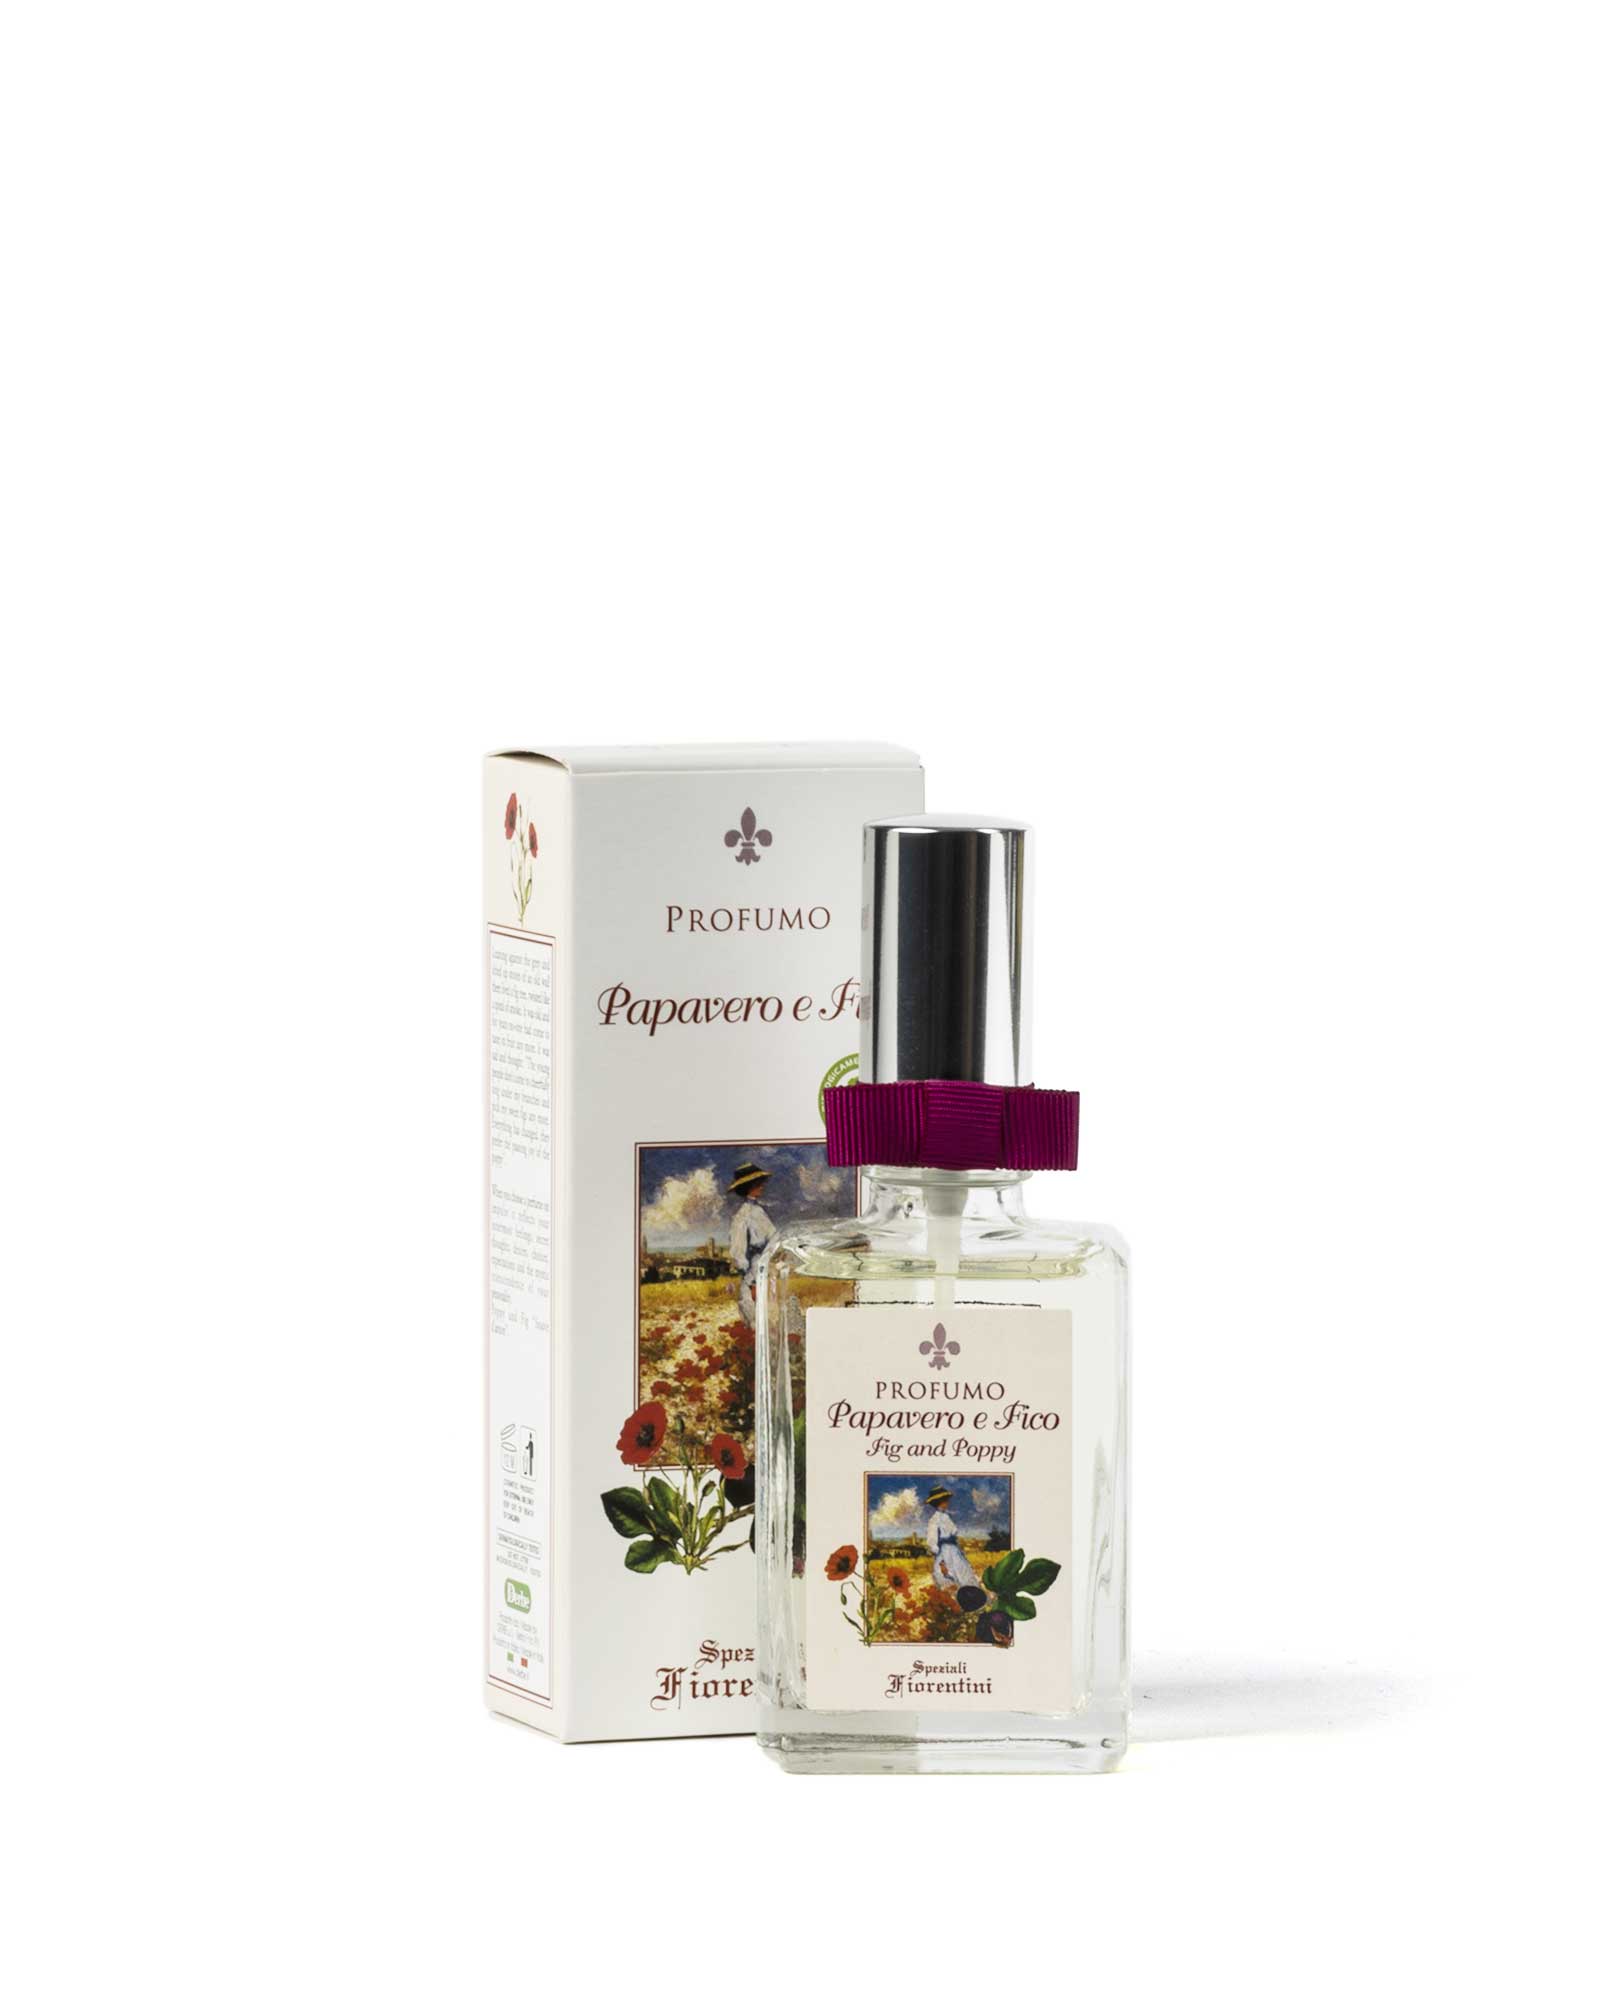 Poppy and fig perfume – Speziali Fiorentini – Derbe